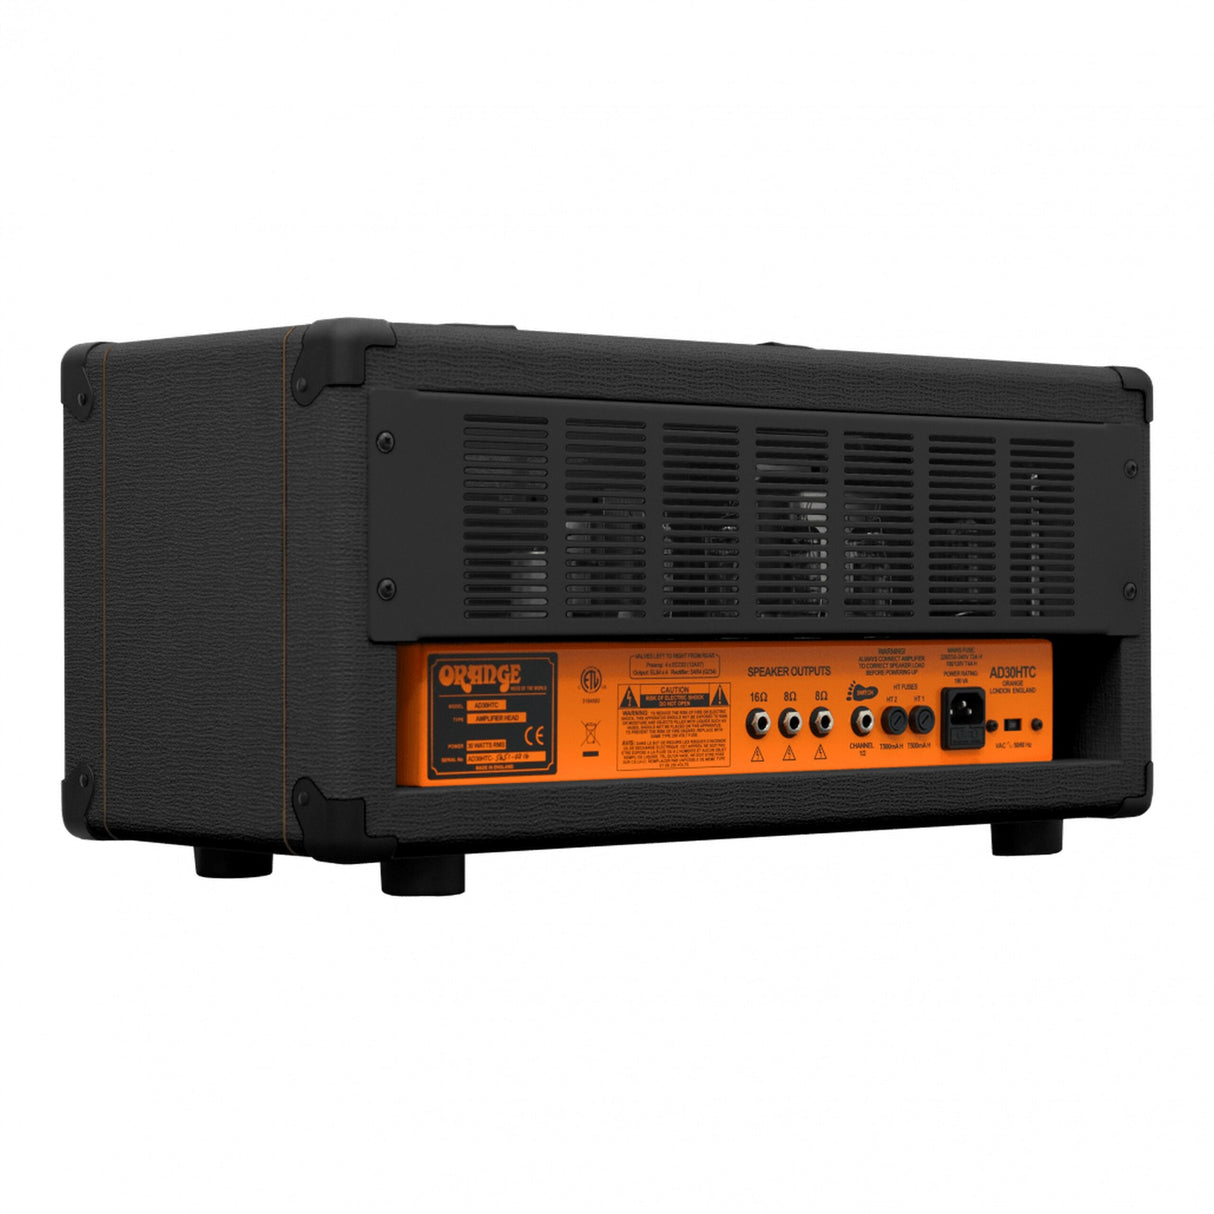 Orange AD30HTC 30-Watt Twin Channel Guitar Amplifier Head, Black